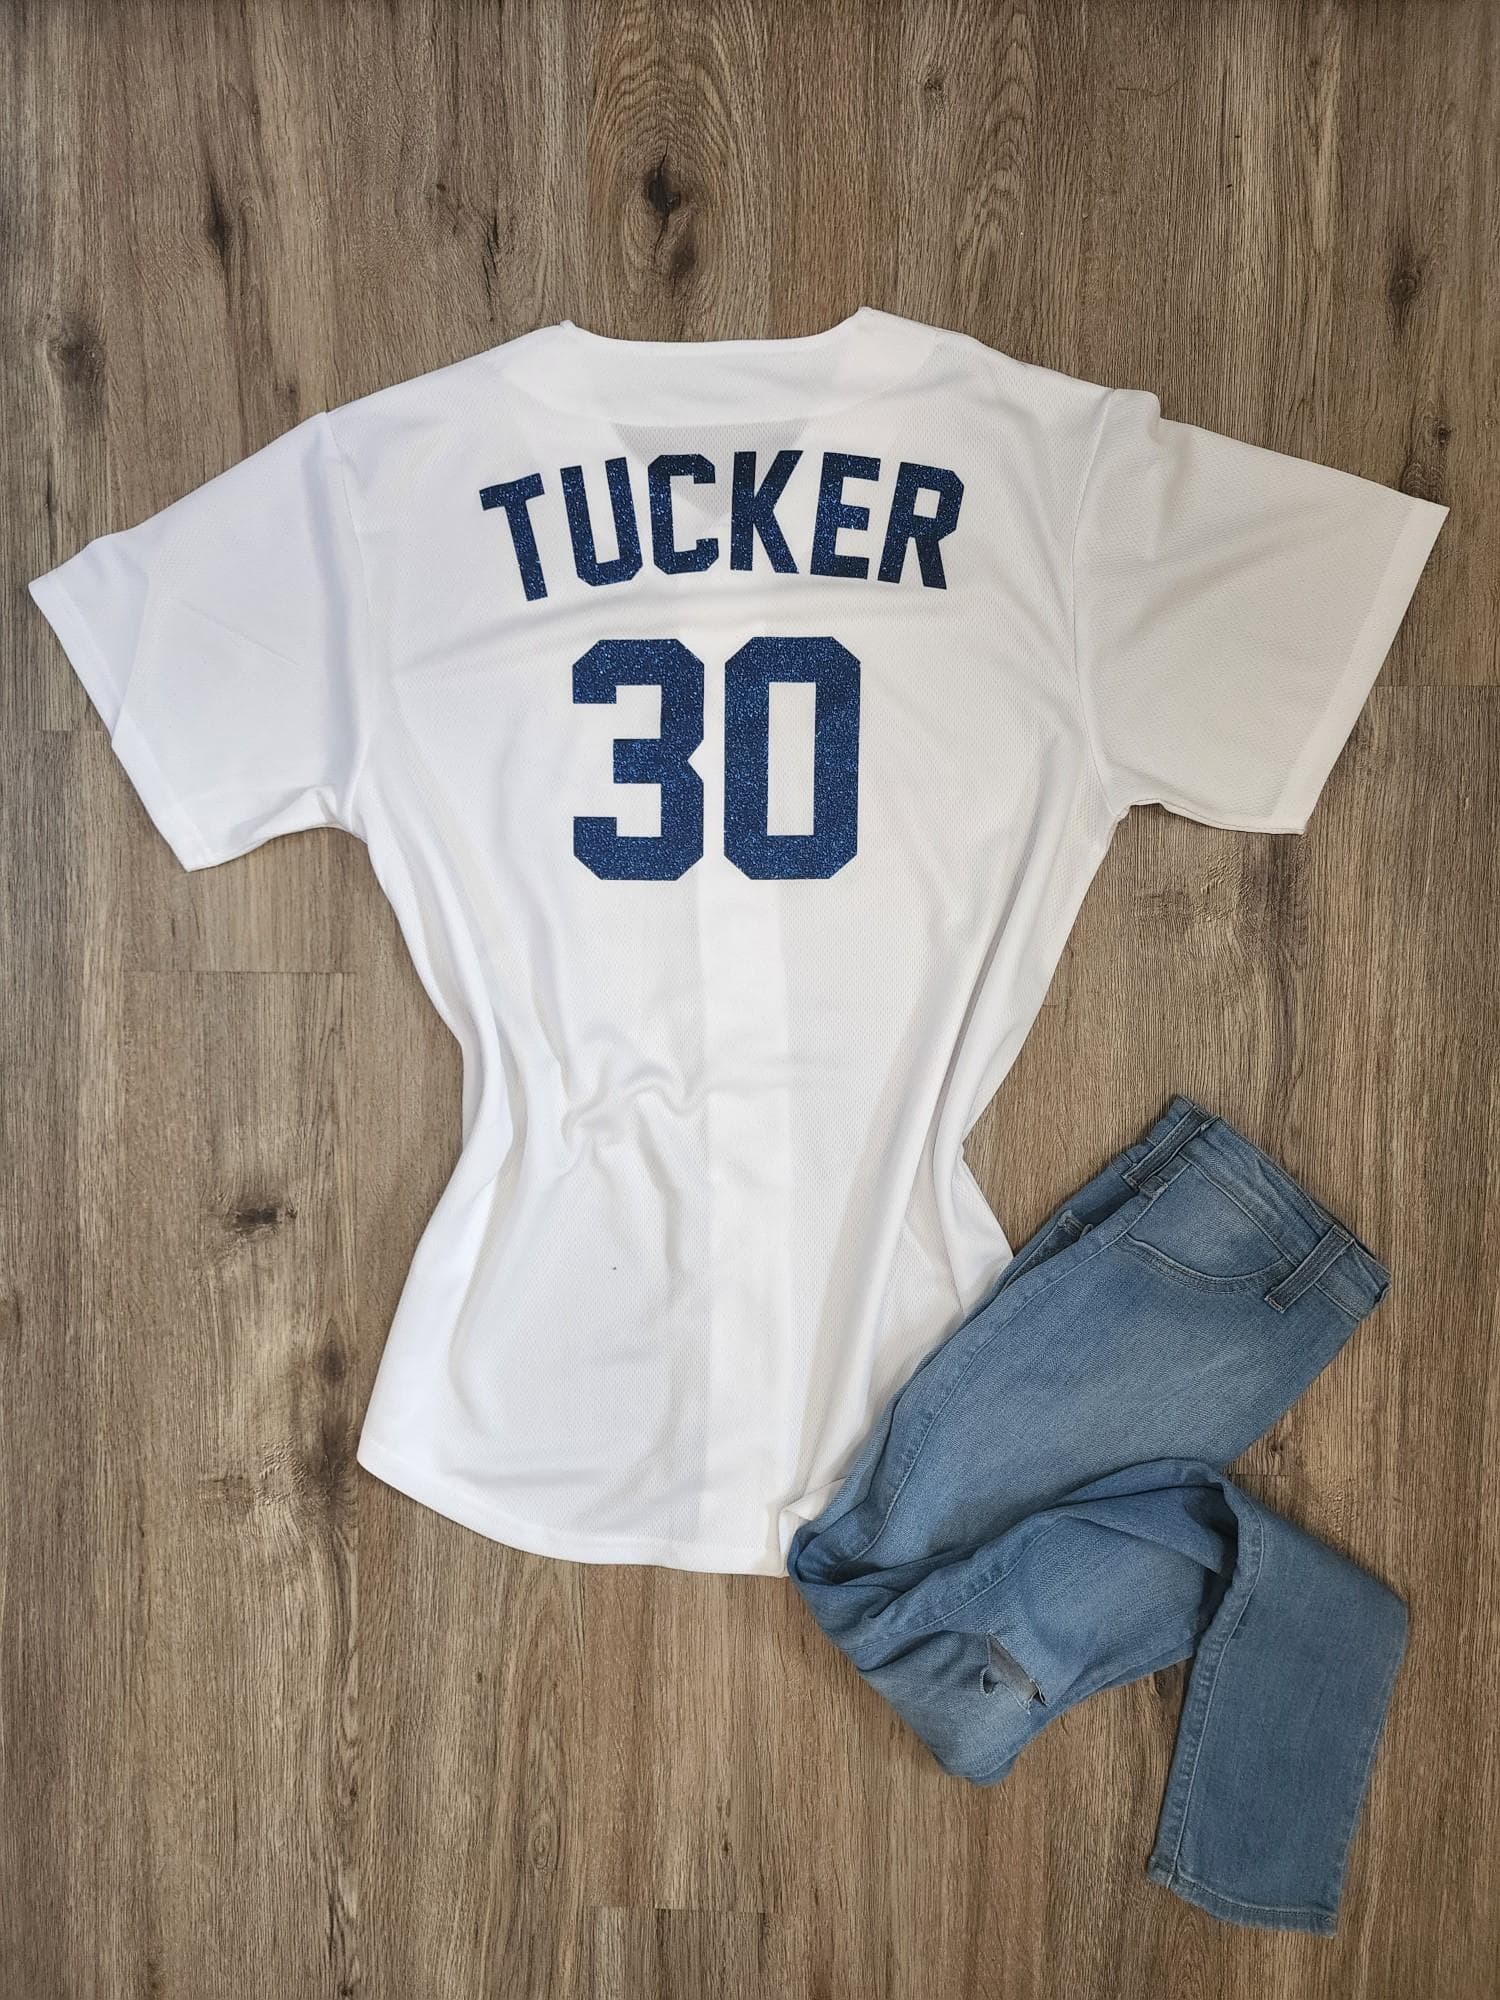 Lulu Grace Designs Houston Astros Inspired Baseball Jersey: Baseball Fan Gear & Apparel for Women S / Ladies Cotton Tank